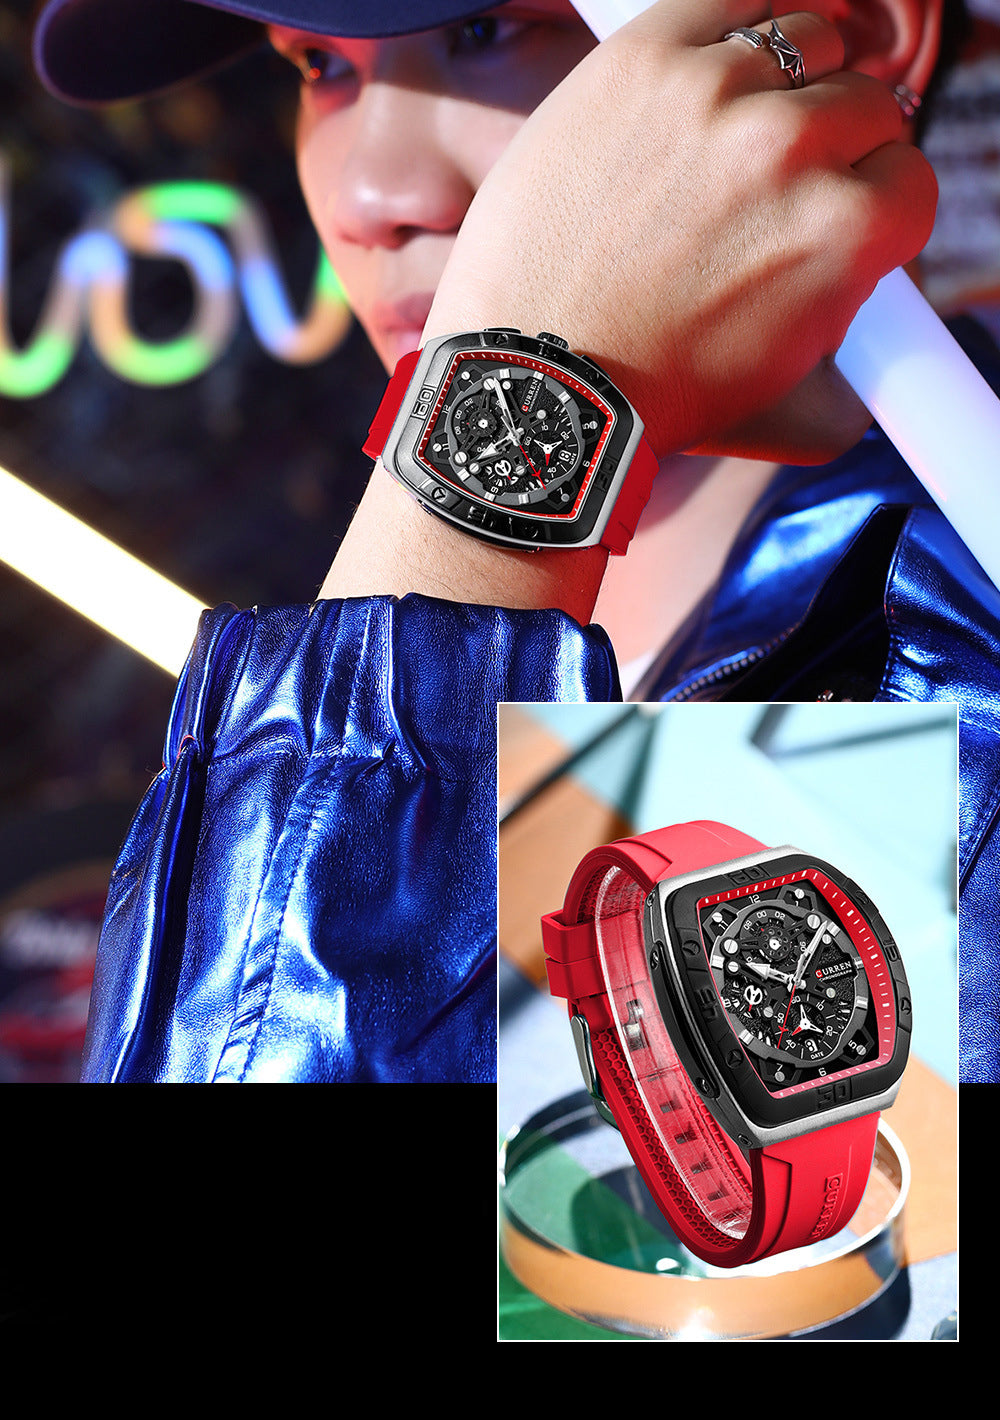 Curren 8443 Luxury Business Sports Wrist Watch Silicone Strap